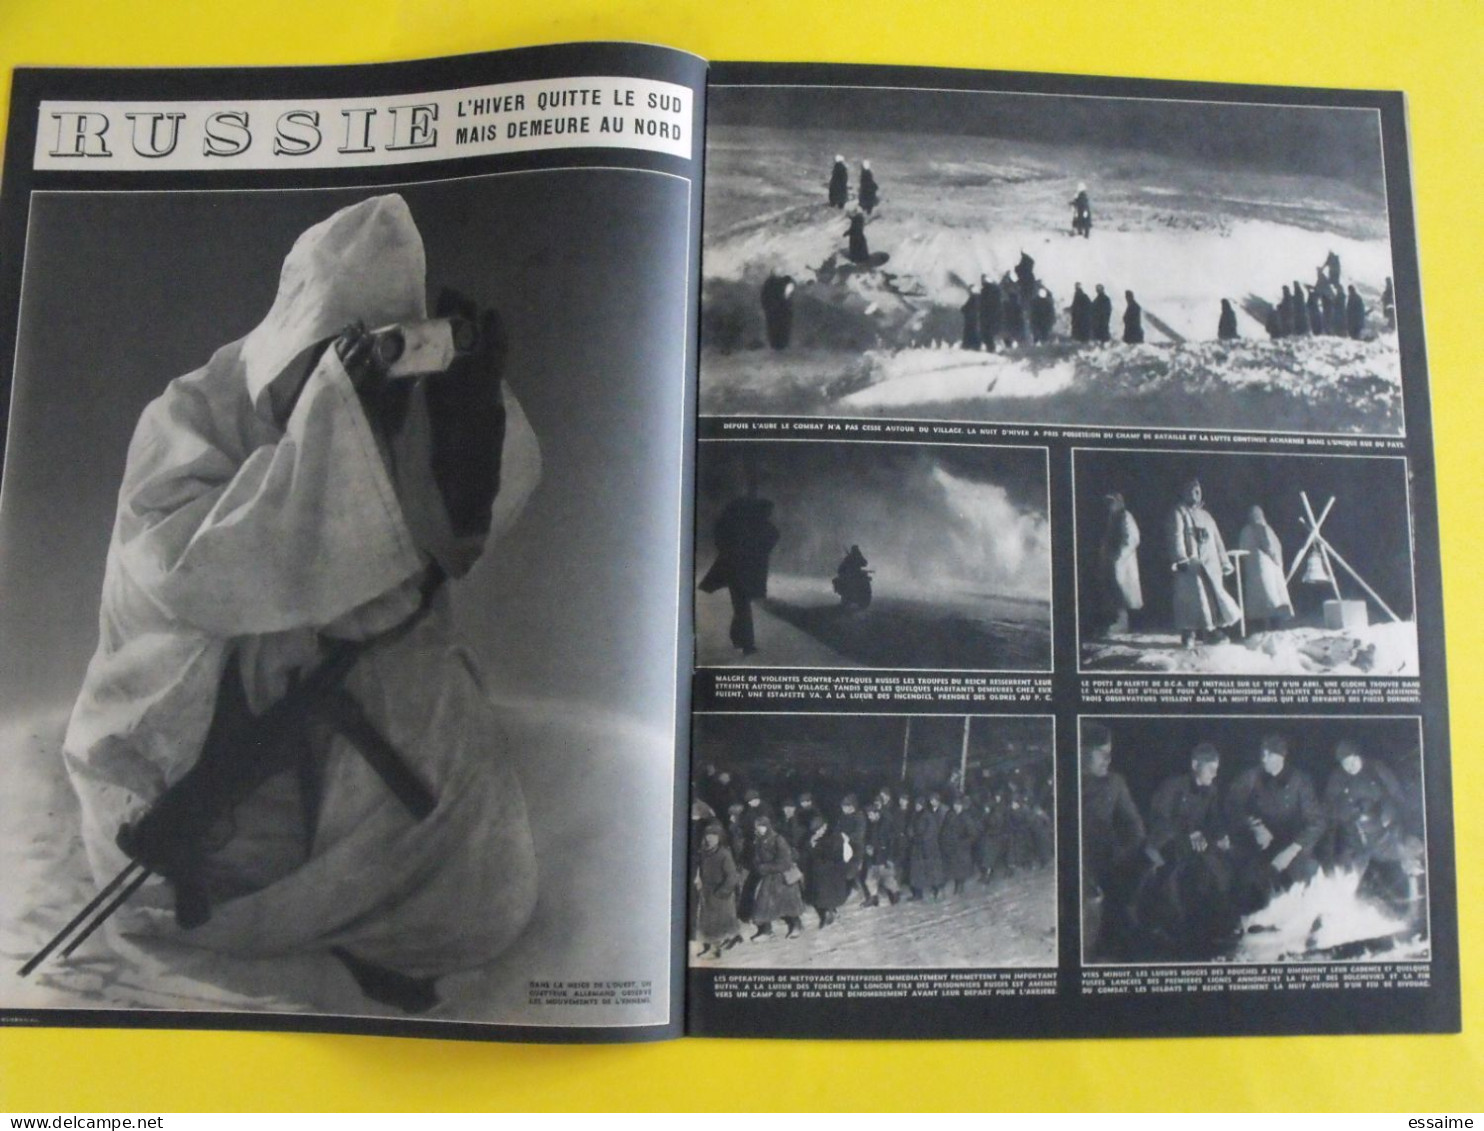 6 revues La semaine de 1942. actualités guerre photos collaboration pacifique japon singapour malaisie australie togo